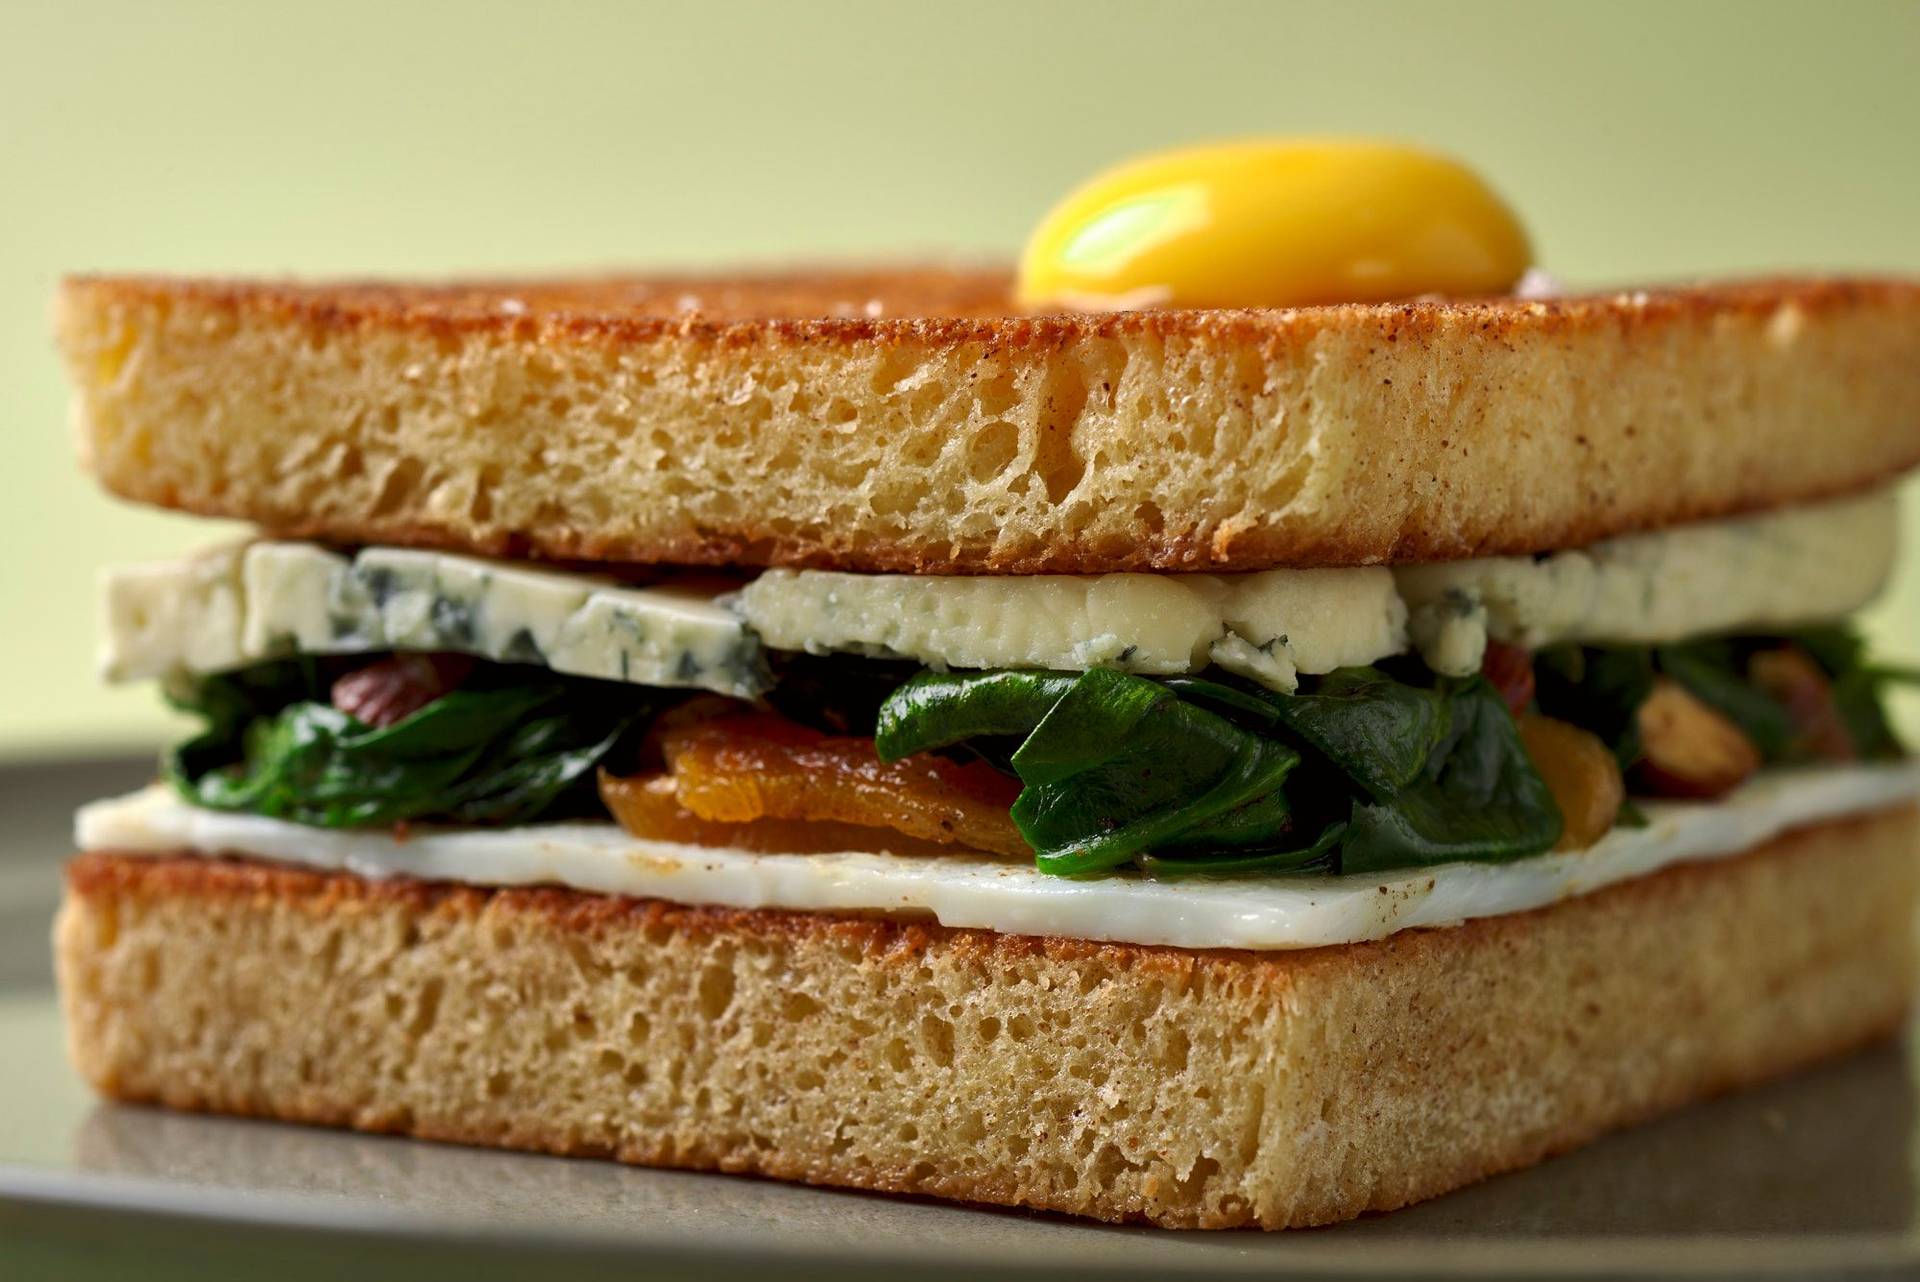 osterbrot sandwich auf grauem teller mit grünem hintergrund